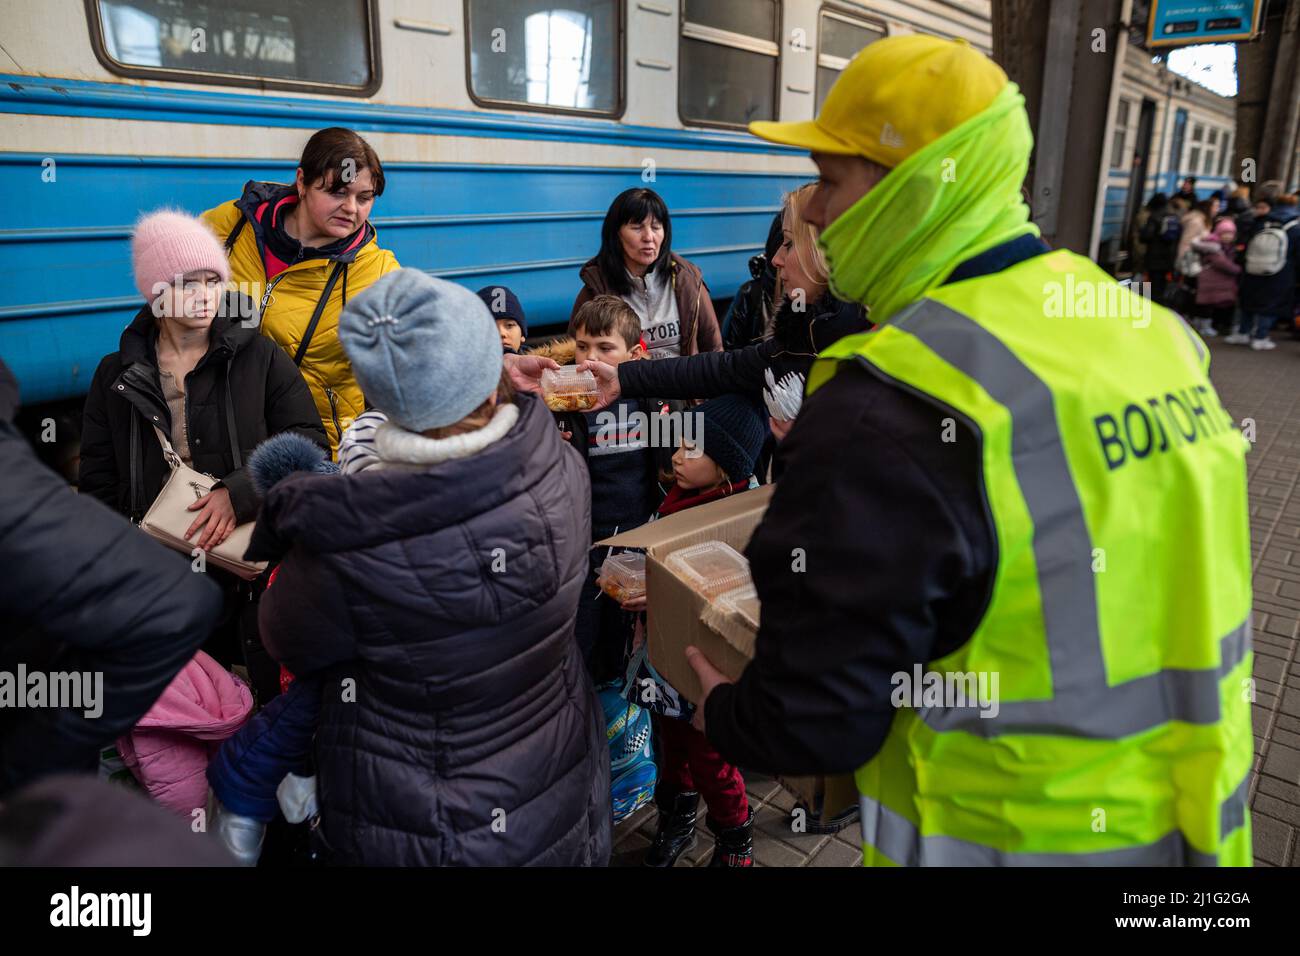 LVIV, UCRANIA - 14 de marzo de 2022: Crisis humanitaria durante la guerra en Ucrania. Los voluntarios que ayudan a alimentar a miles de refugiados huyen del territorio devastado por la guerra Foto de stock